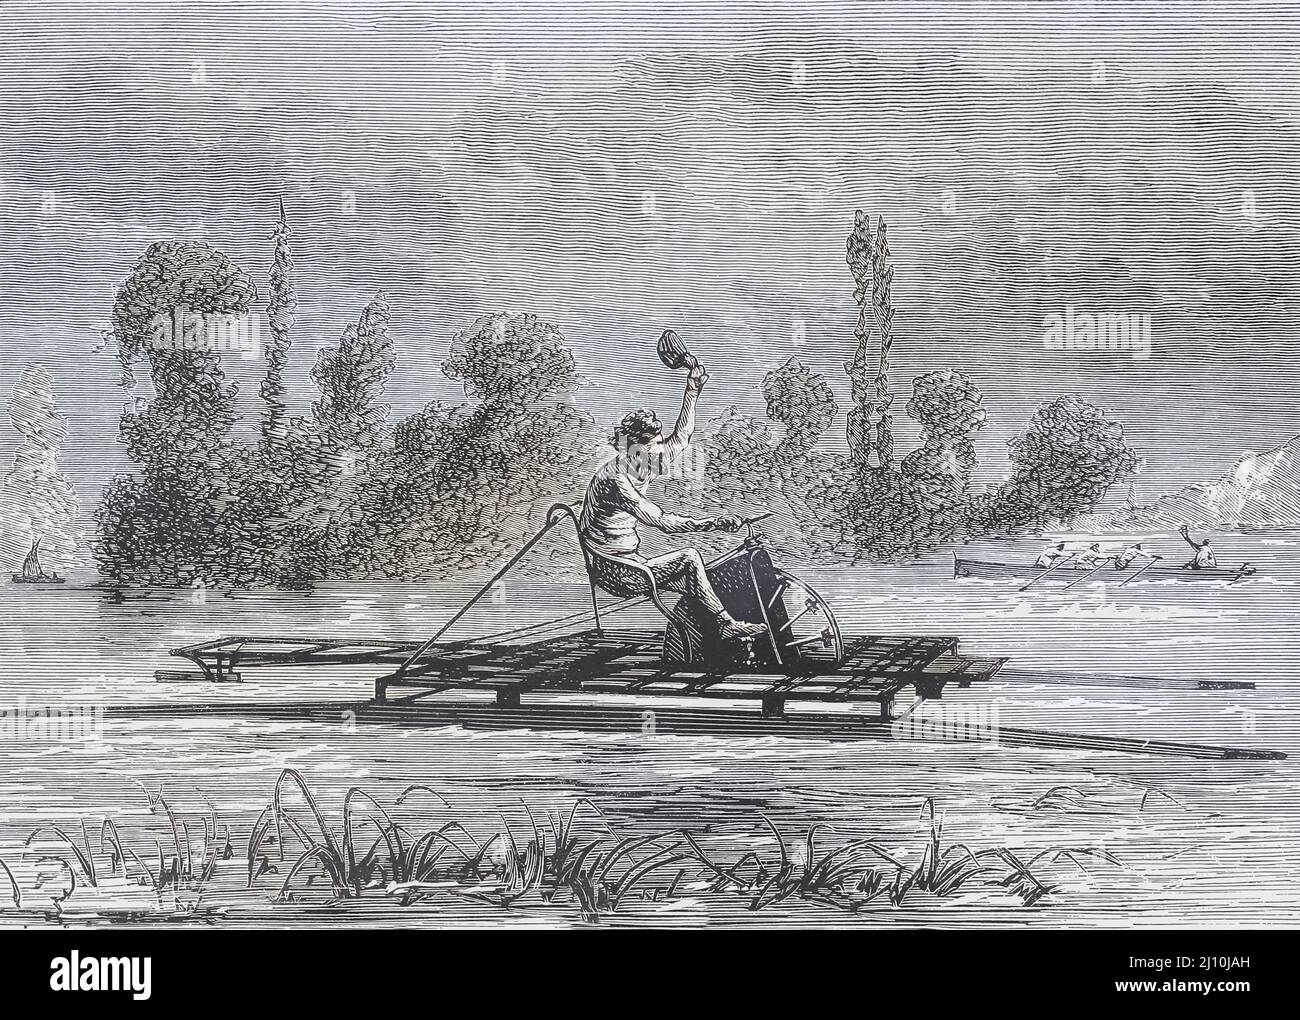 Eine Wasservelocipede. Mit in das Rad eingebauten Paddeln und dem Rad, das durch Pedalieren angetrieben wurde, war dies im Grunde ein Wasserfahrrad. Dieses Modell scheint das schwimmende Velocipid zu sein, das die Erfindung der Amerikaner Carl Wederkinch und Archibald Starkweather war und 1870 patentiert wurde. Nach einem Werk eines unbekannten Künstlers aus dem 19.. Jahrhundert. Stockfoto